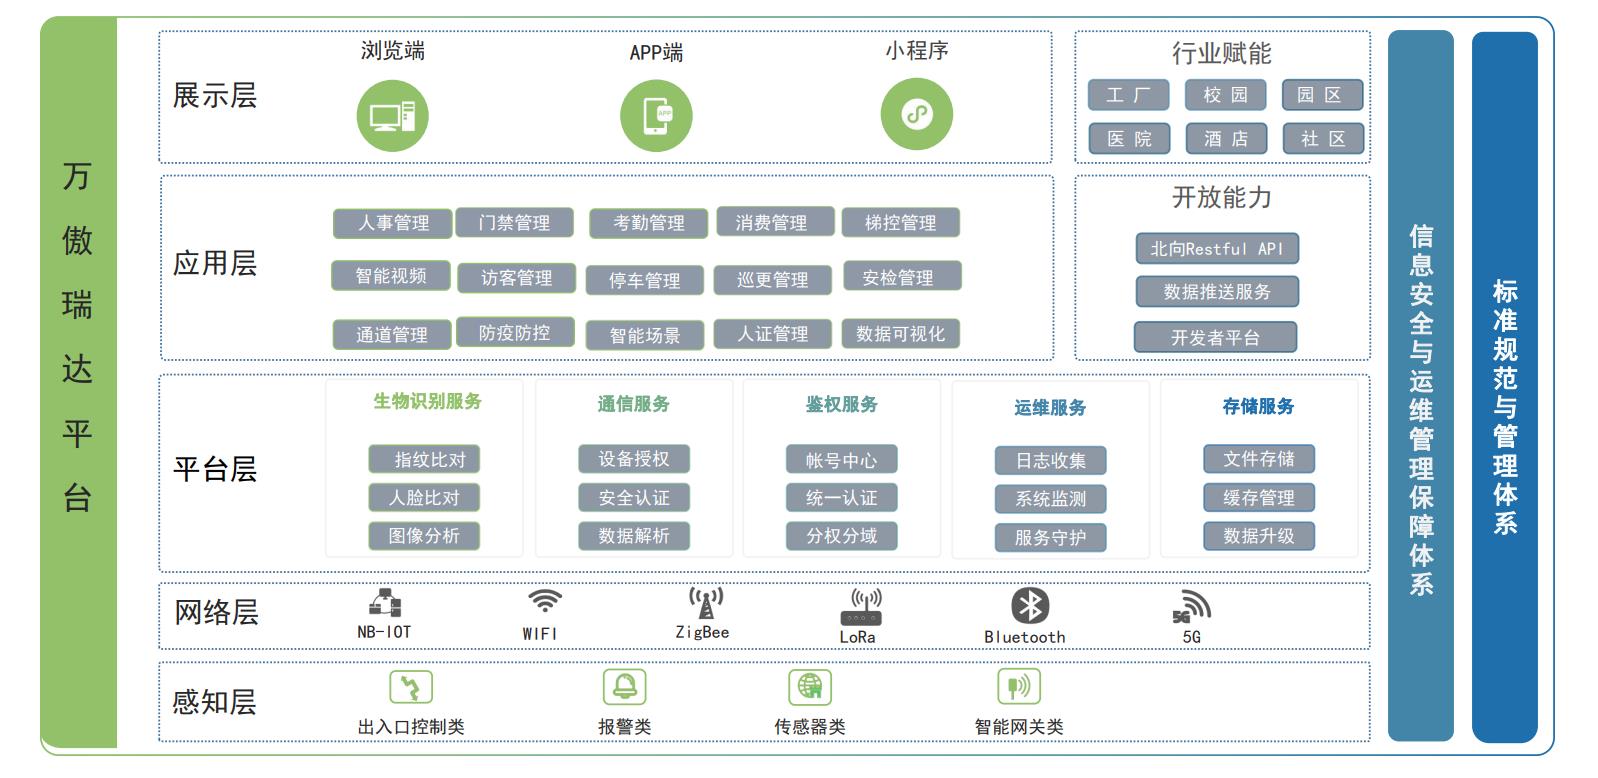 万傲瑞达V6600-大型安防智能综合管理平台(图1)